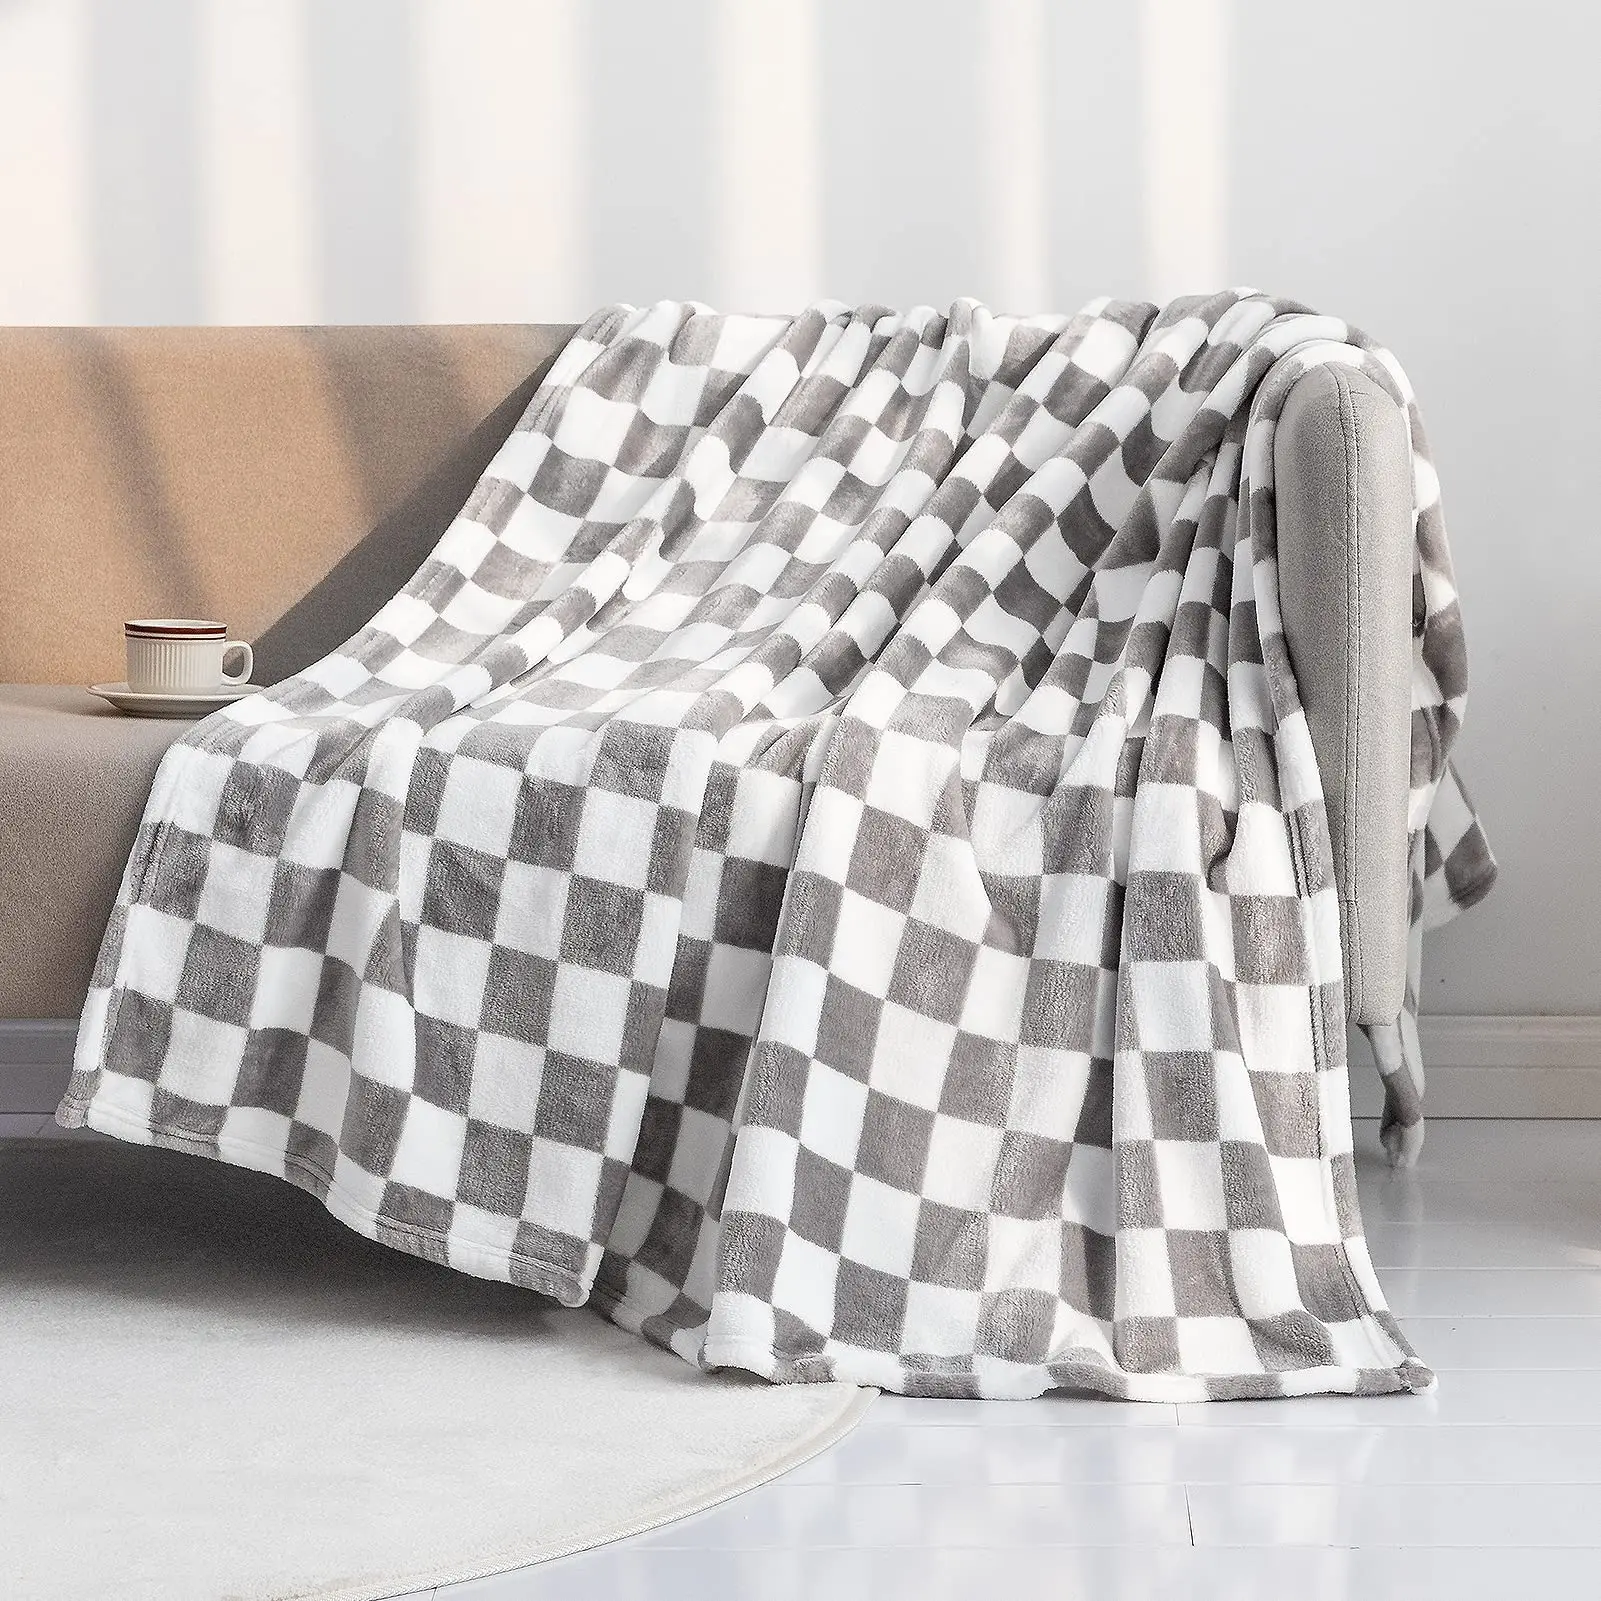 Черно-белое сетчатое одеяло, постельное белье с геометрическим рисунком в клетку, легкое теплое одеяло, пушистое мягкое для кровати, дивана, домашнего декора 3